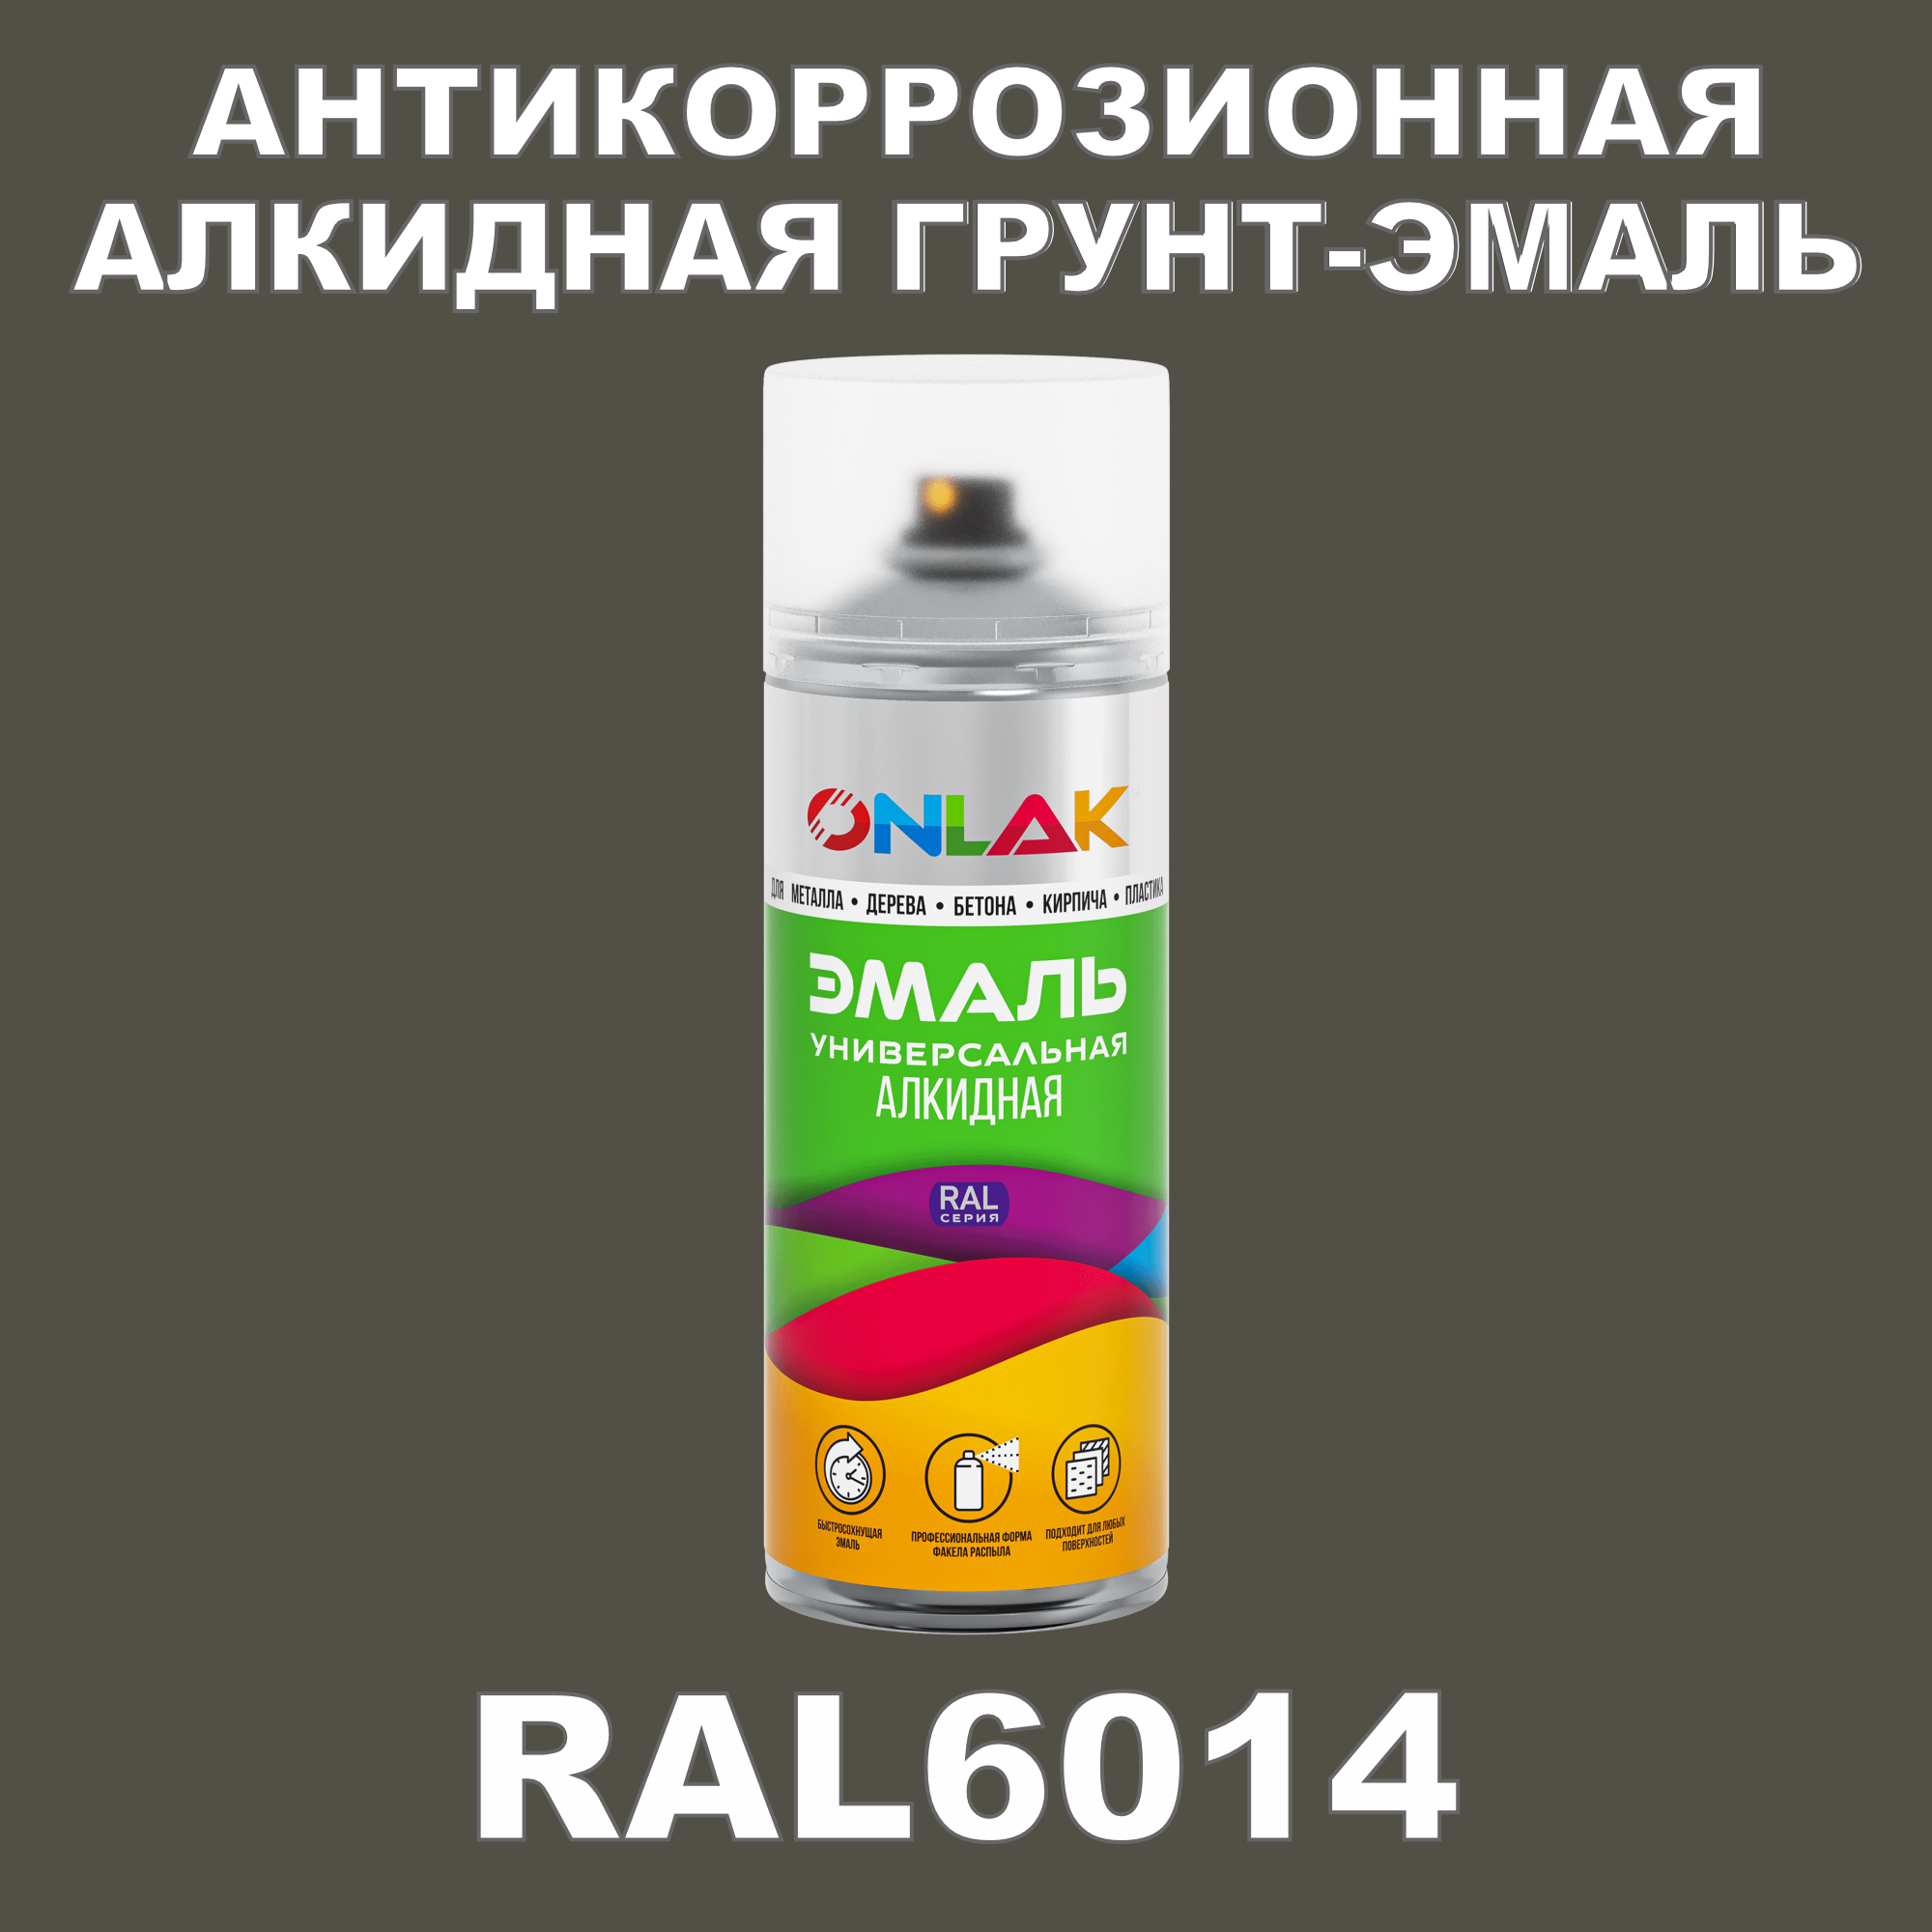 Антикоррозионная грунт-эмаль ONLAK RAL 6014,зеленый,599 мл